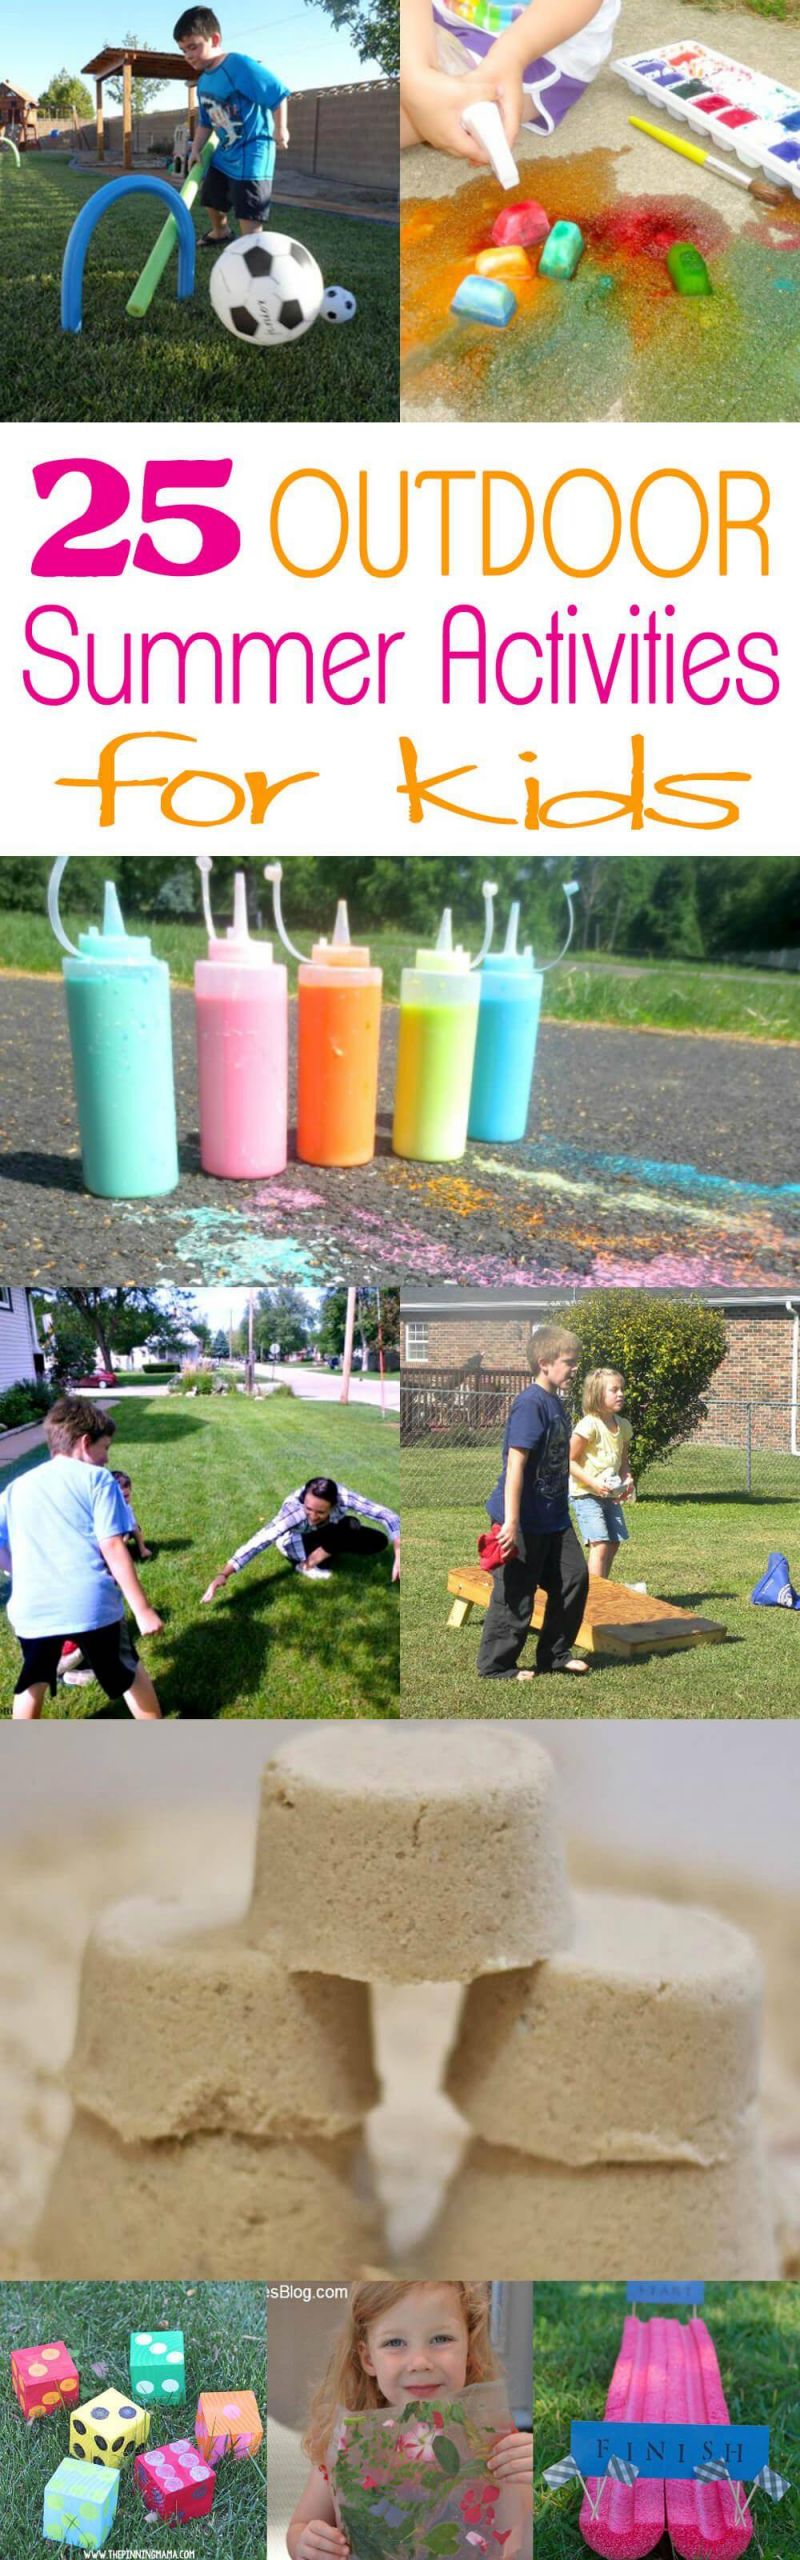 Summer Activities With Kids
 25 Outdoor Summer Activities for Kids